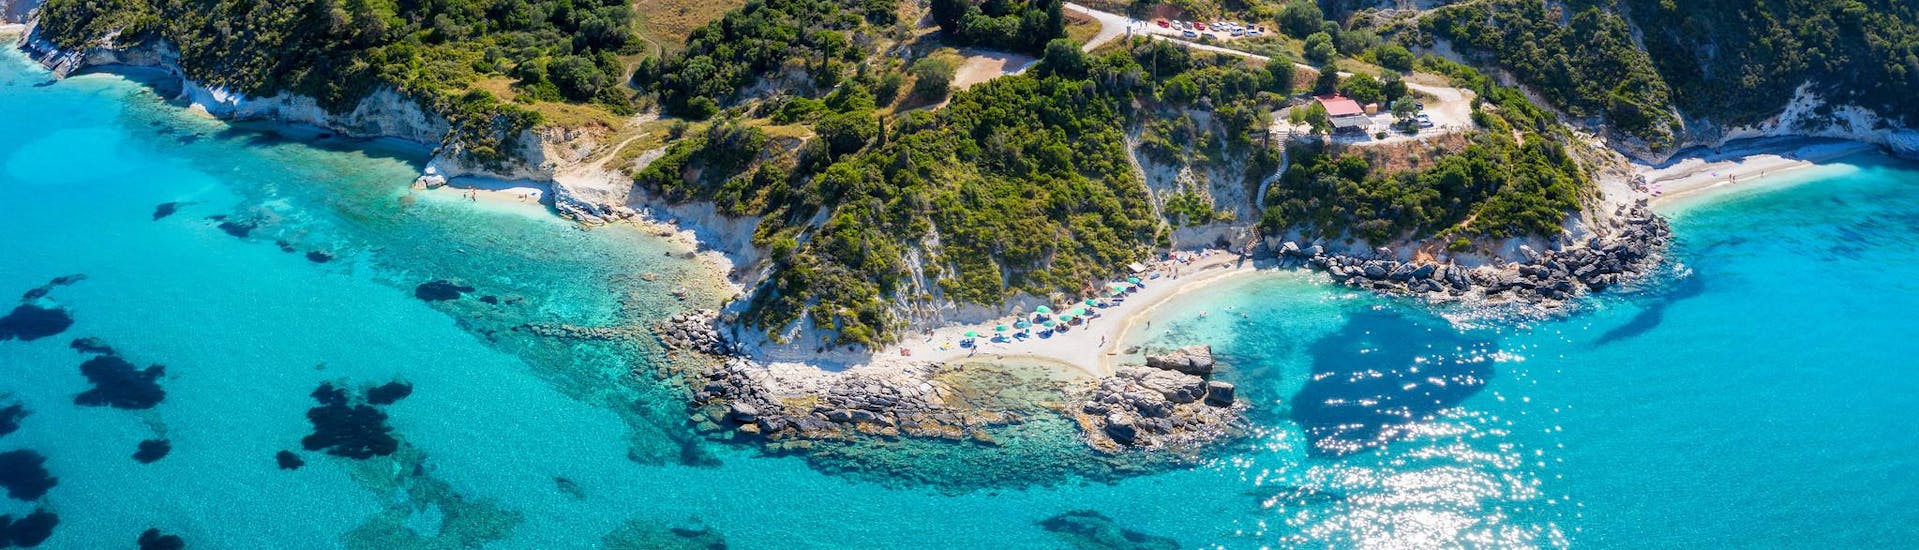 Vue aérienne de la plage de Xigia, un endroit idéal pour les balades en bateau à Zante.